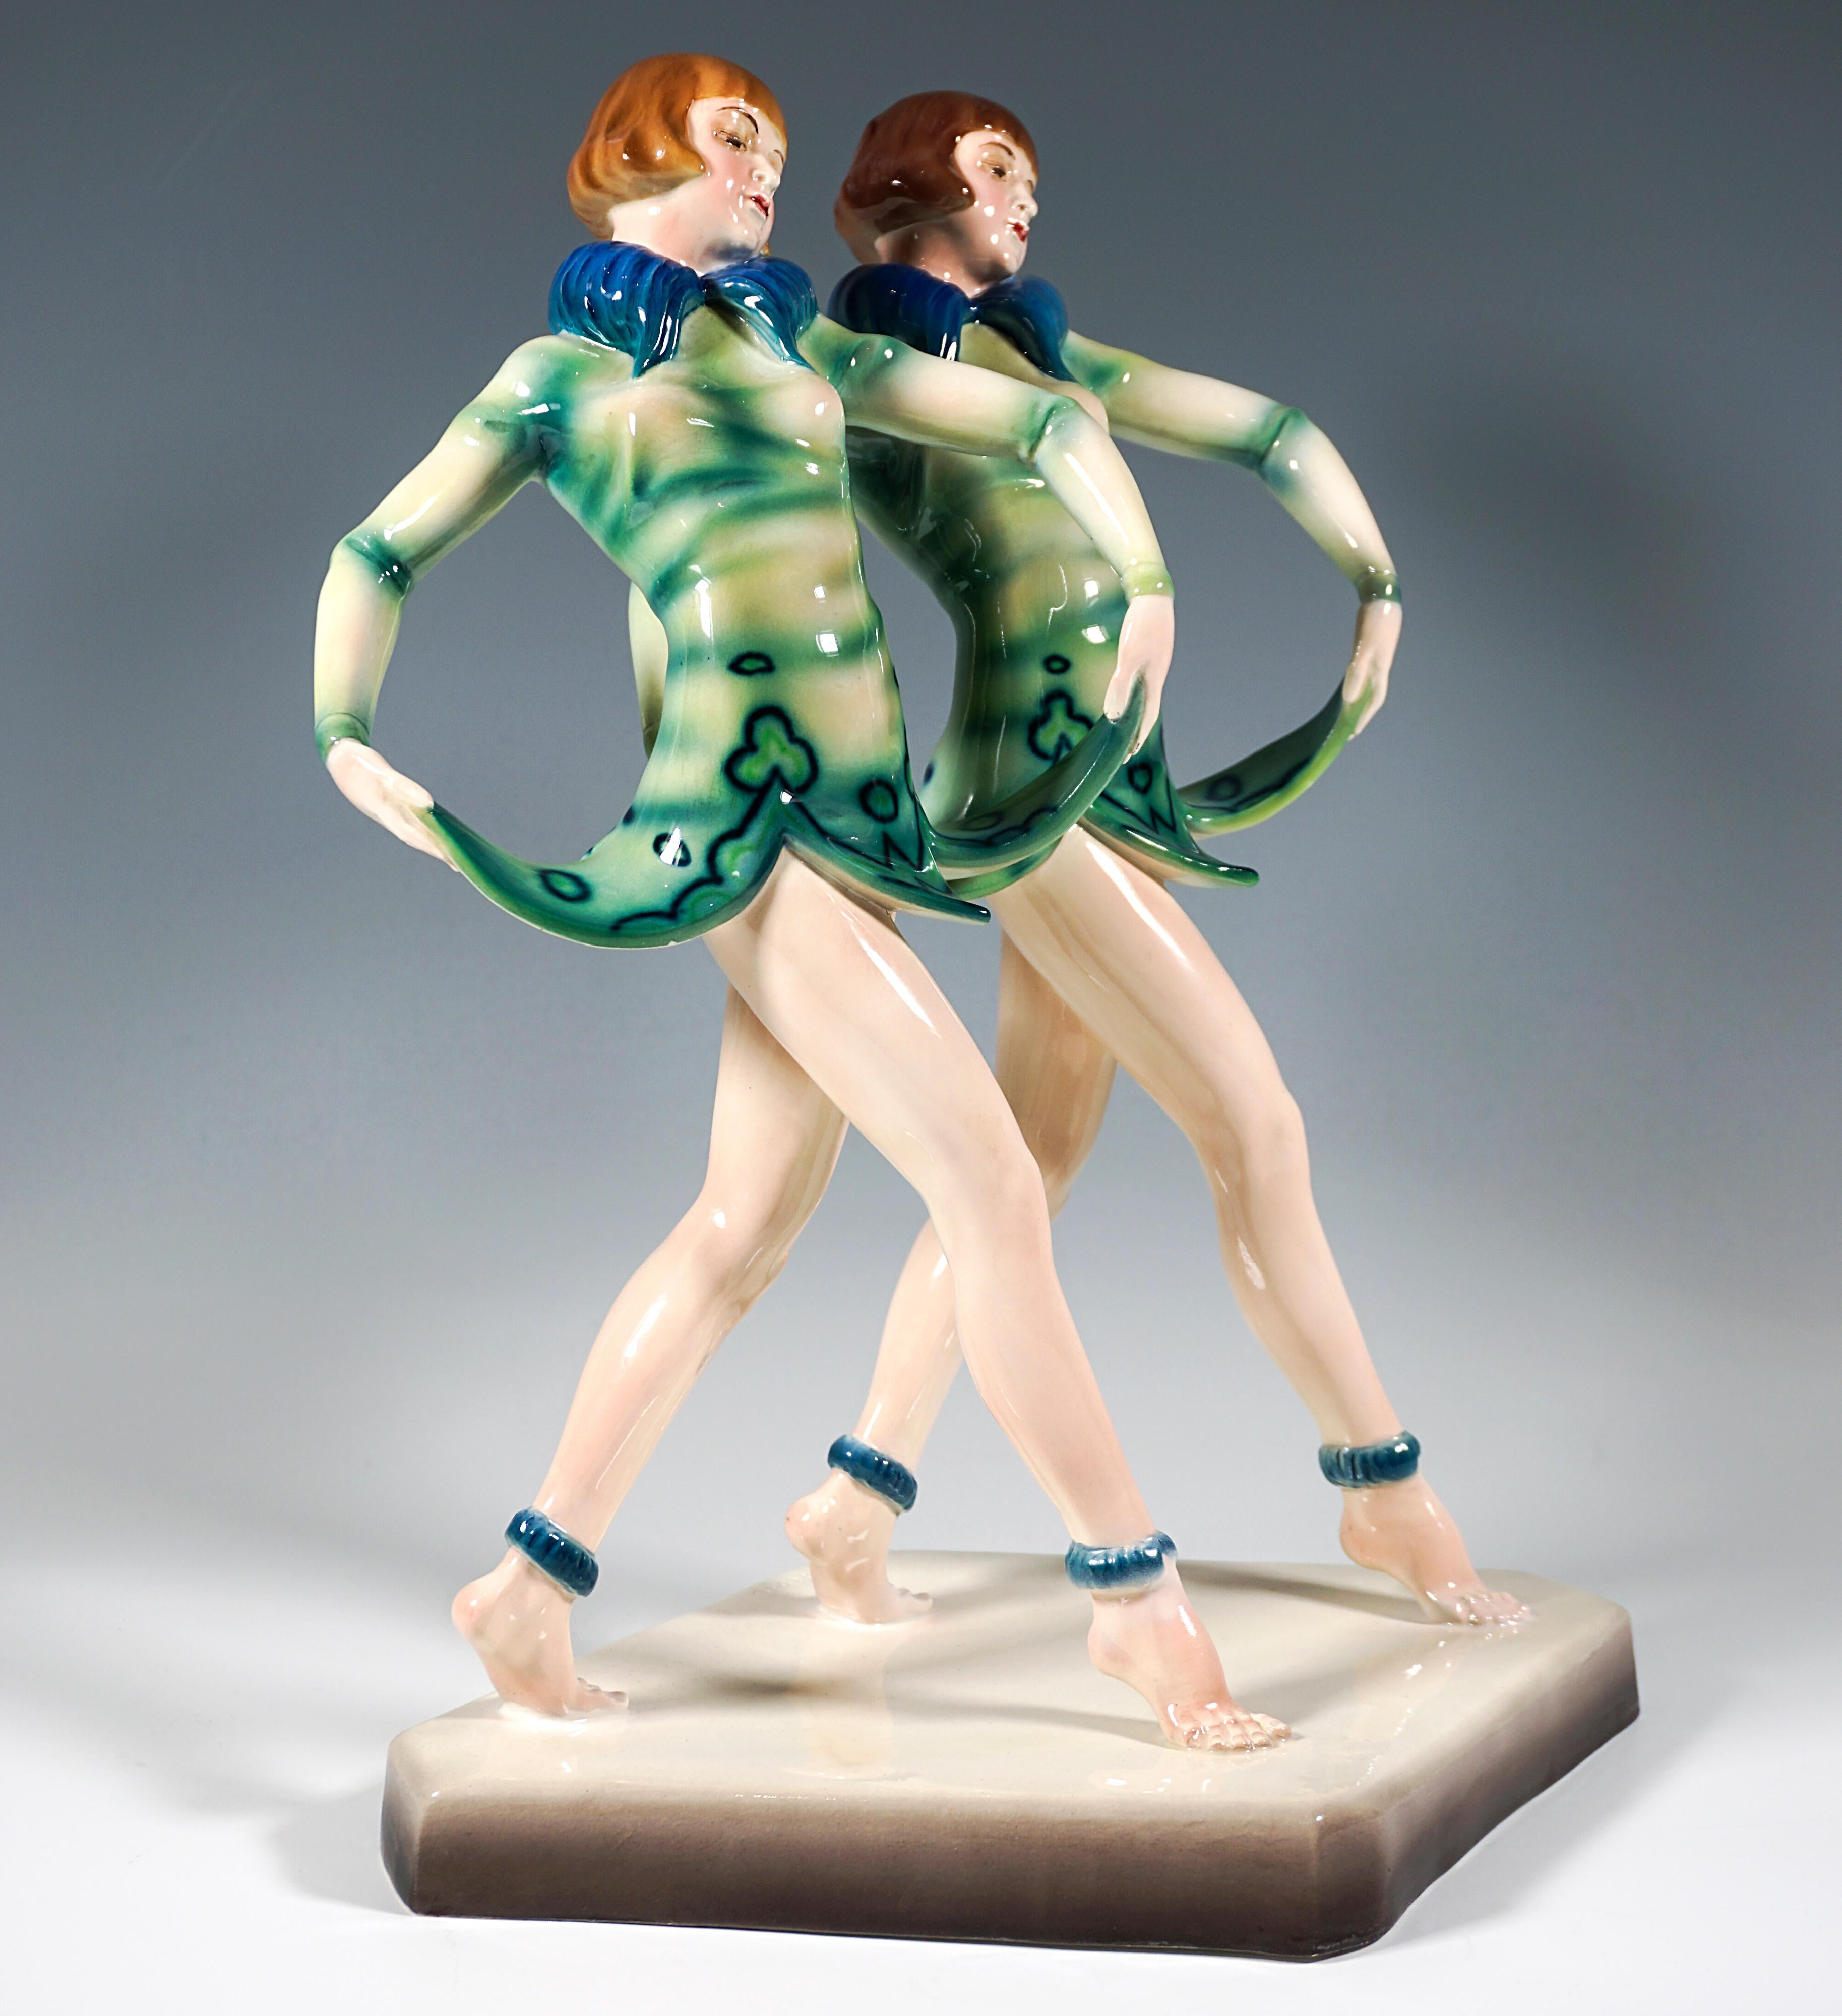 Bemerkenswerte und seltene Goldscheider Art-Déco-Figurengruppe aus den späten 1920er Jahren:
Zwei posierende junge Revue-Zwillinge mit Pagenfrisuren, die parallel einen Schritt vorwärts machen und dabei mit beiden Händen den glockenblumenförmigen